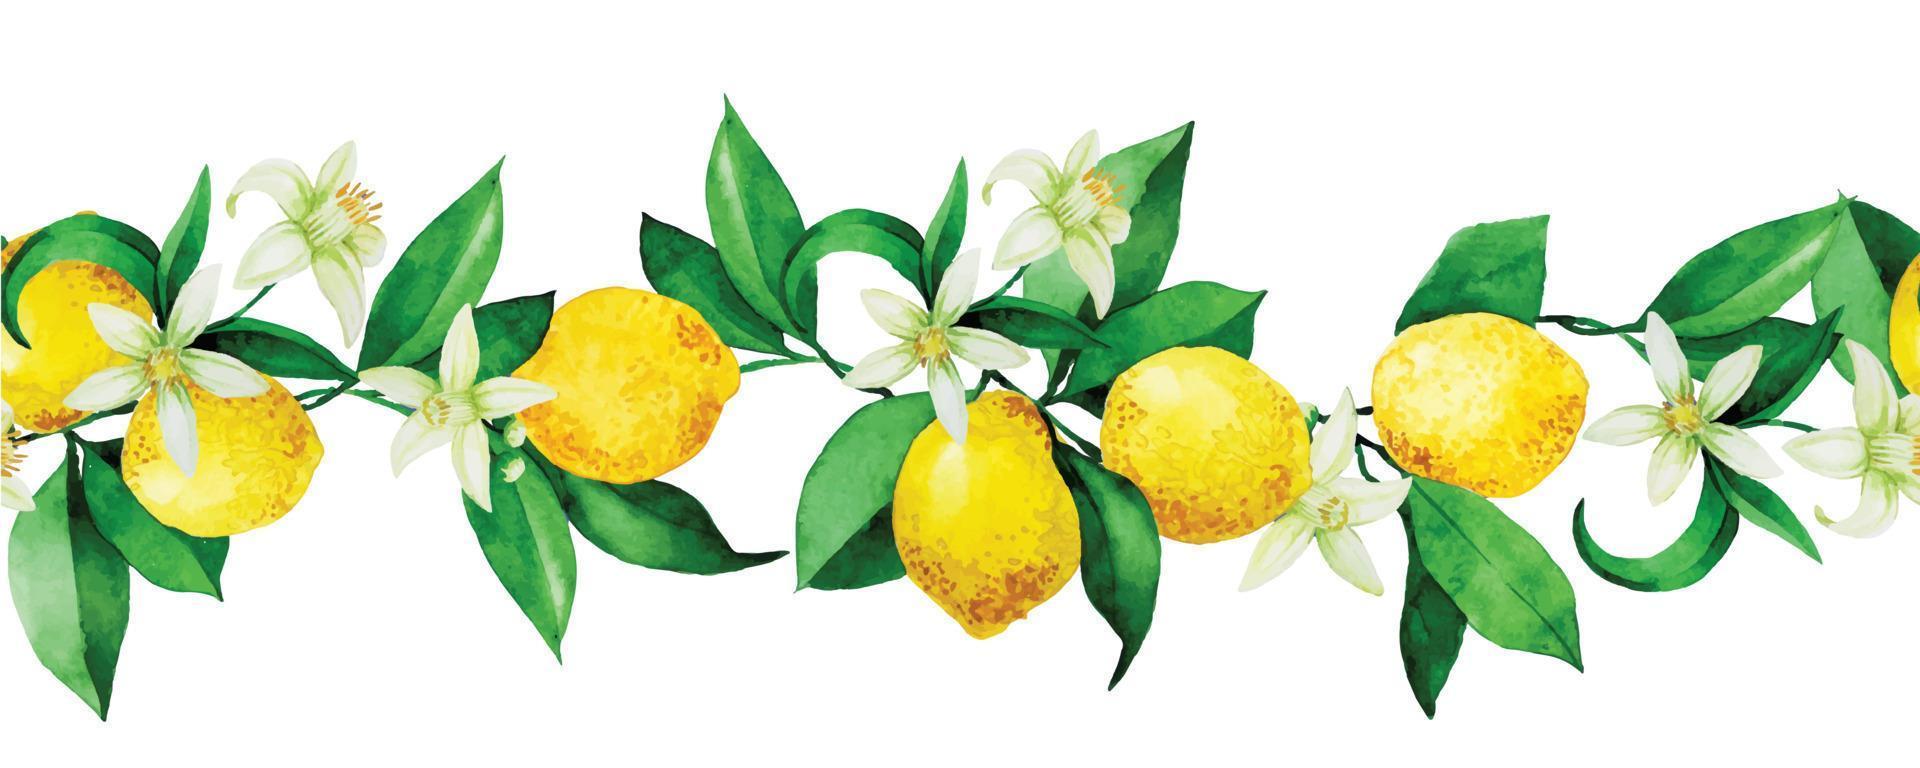 modello acquerello senza soluzione di continuità, bordo con limoni. limoni gialli, fiori e foglie su sfondo bianco. stampa d'epoca vettore